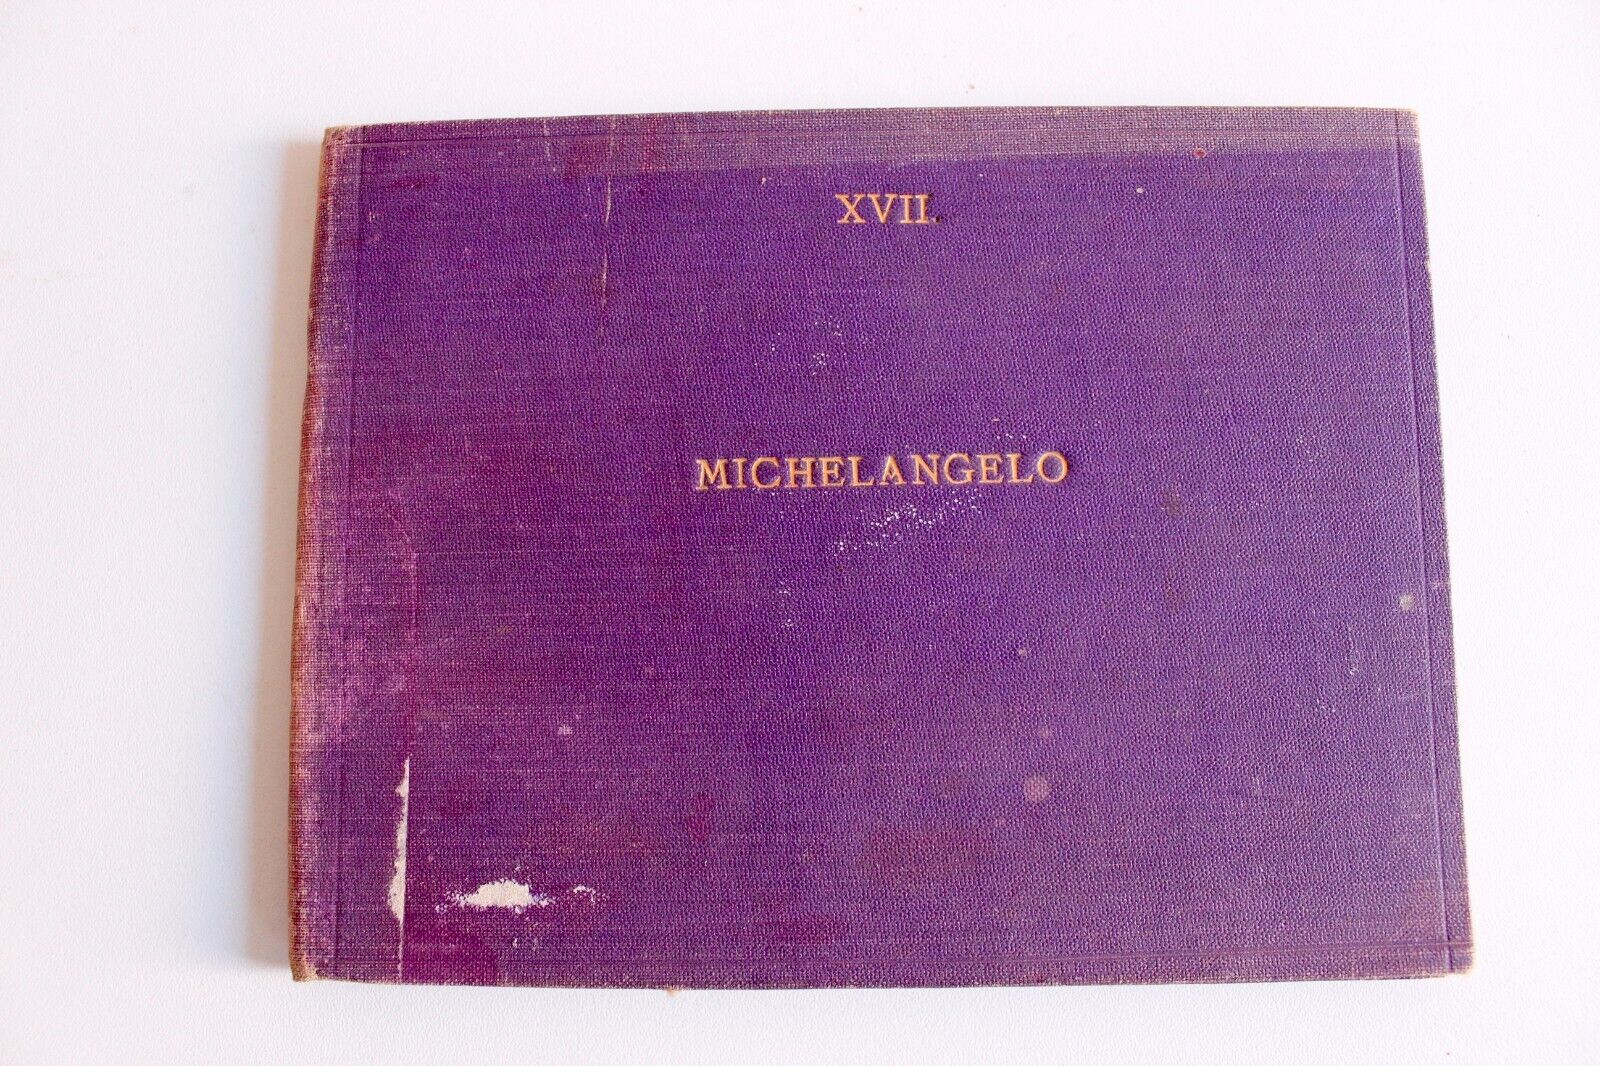 RARE PHOTO ALBUM MICHELANGELO XVII